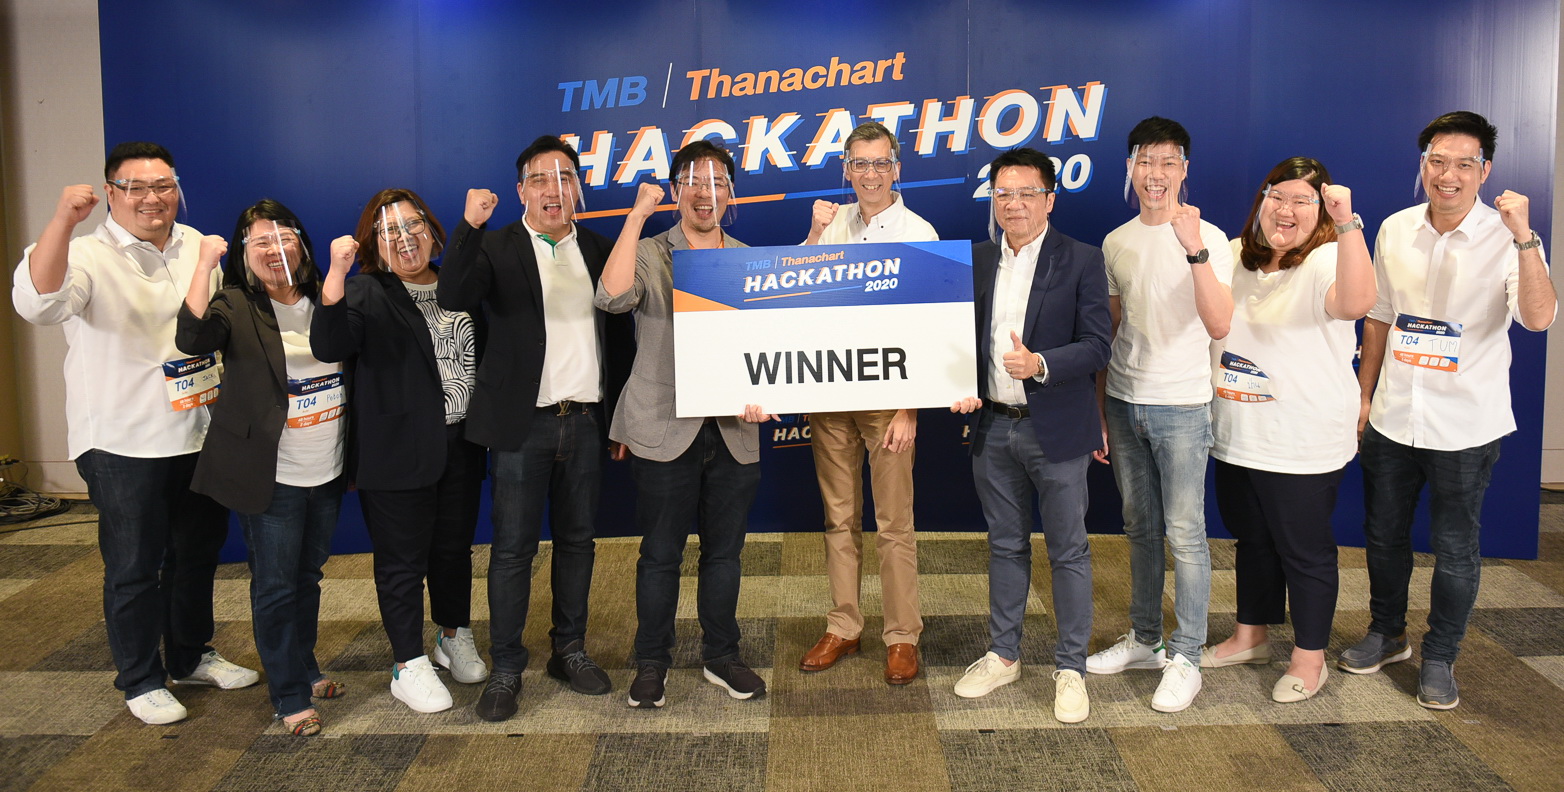 ทีเอ็มบีและธนชาต จัดกิจกรรม TMB l Thanachart Hackathon 2020 อีกขั้นของธนาคารยุคใหม่ มุ่งสร้าง Financial Well-being